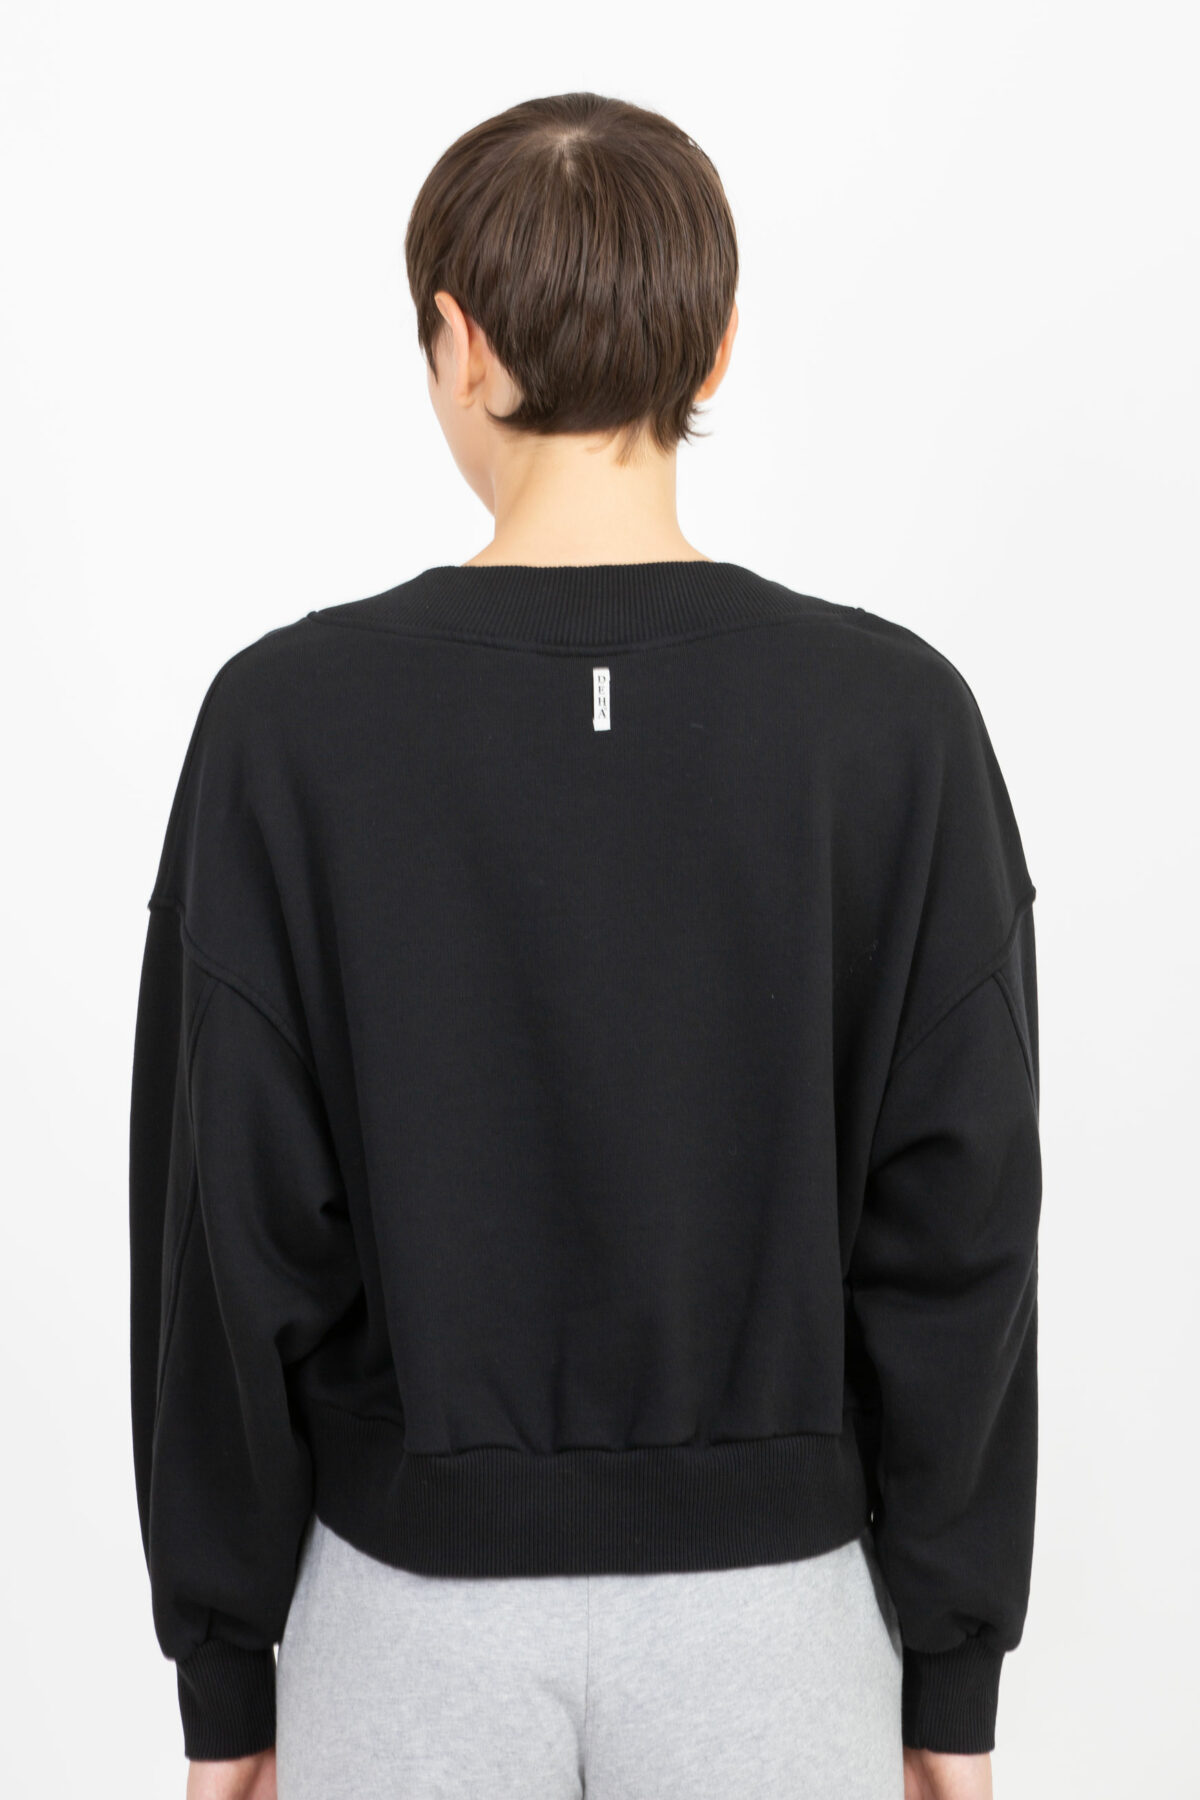 b74104-comfort-black-sweatshirt-round-crop-vneck-deha-matchboxathens